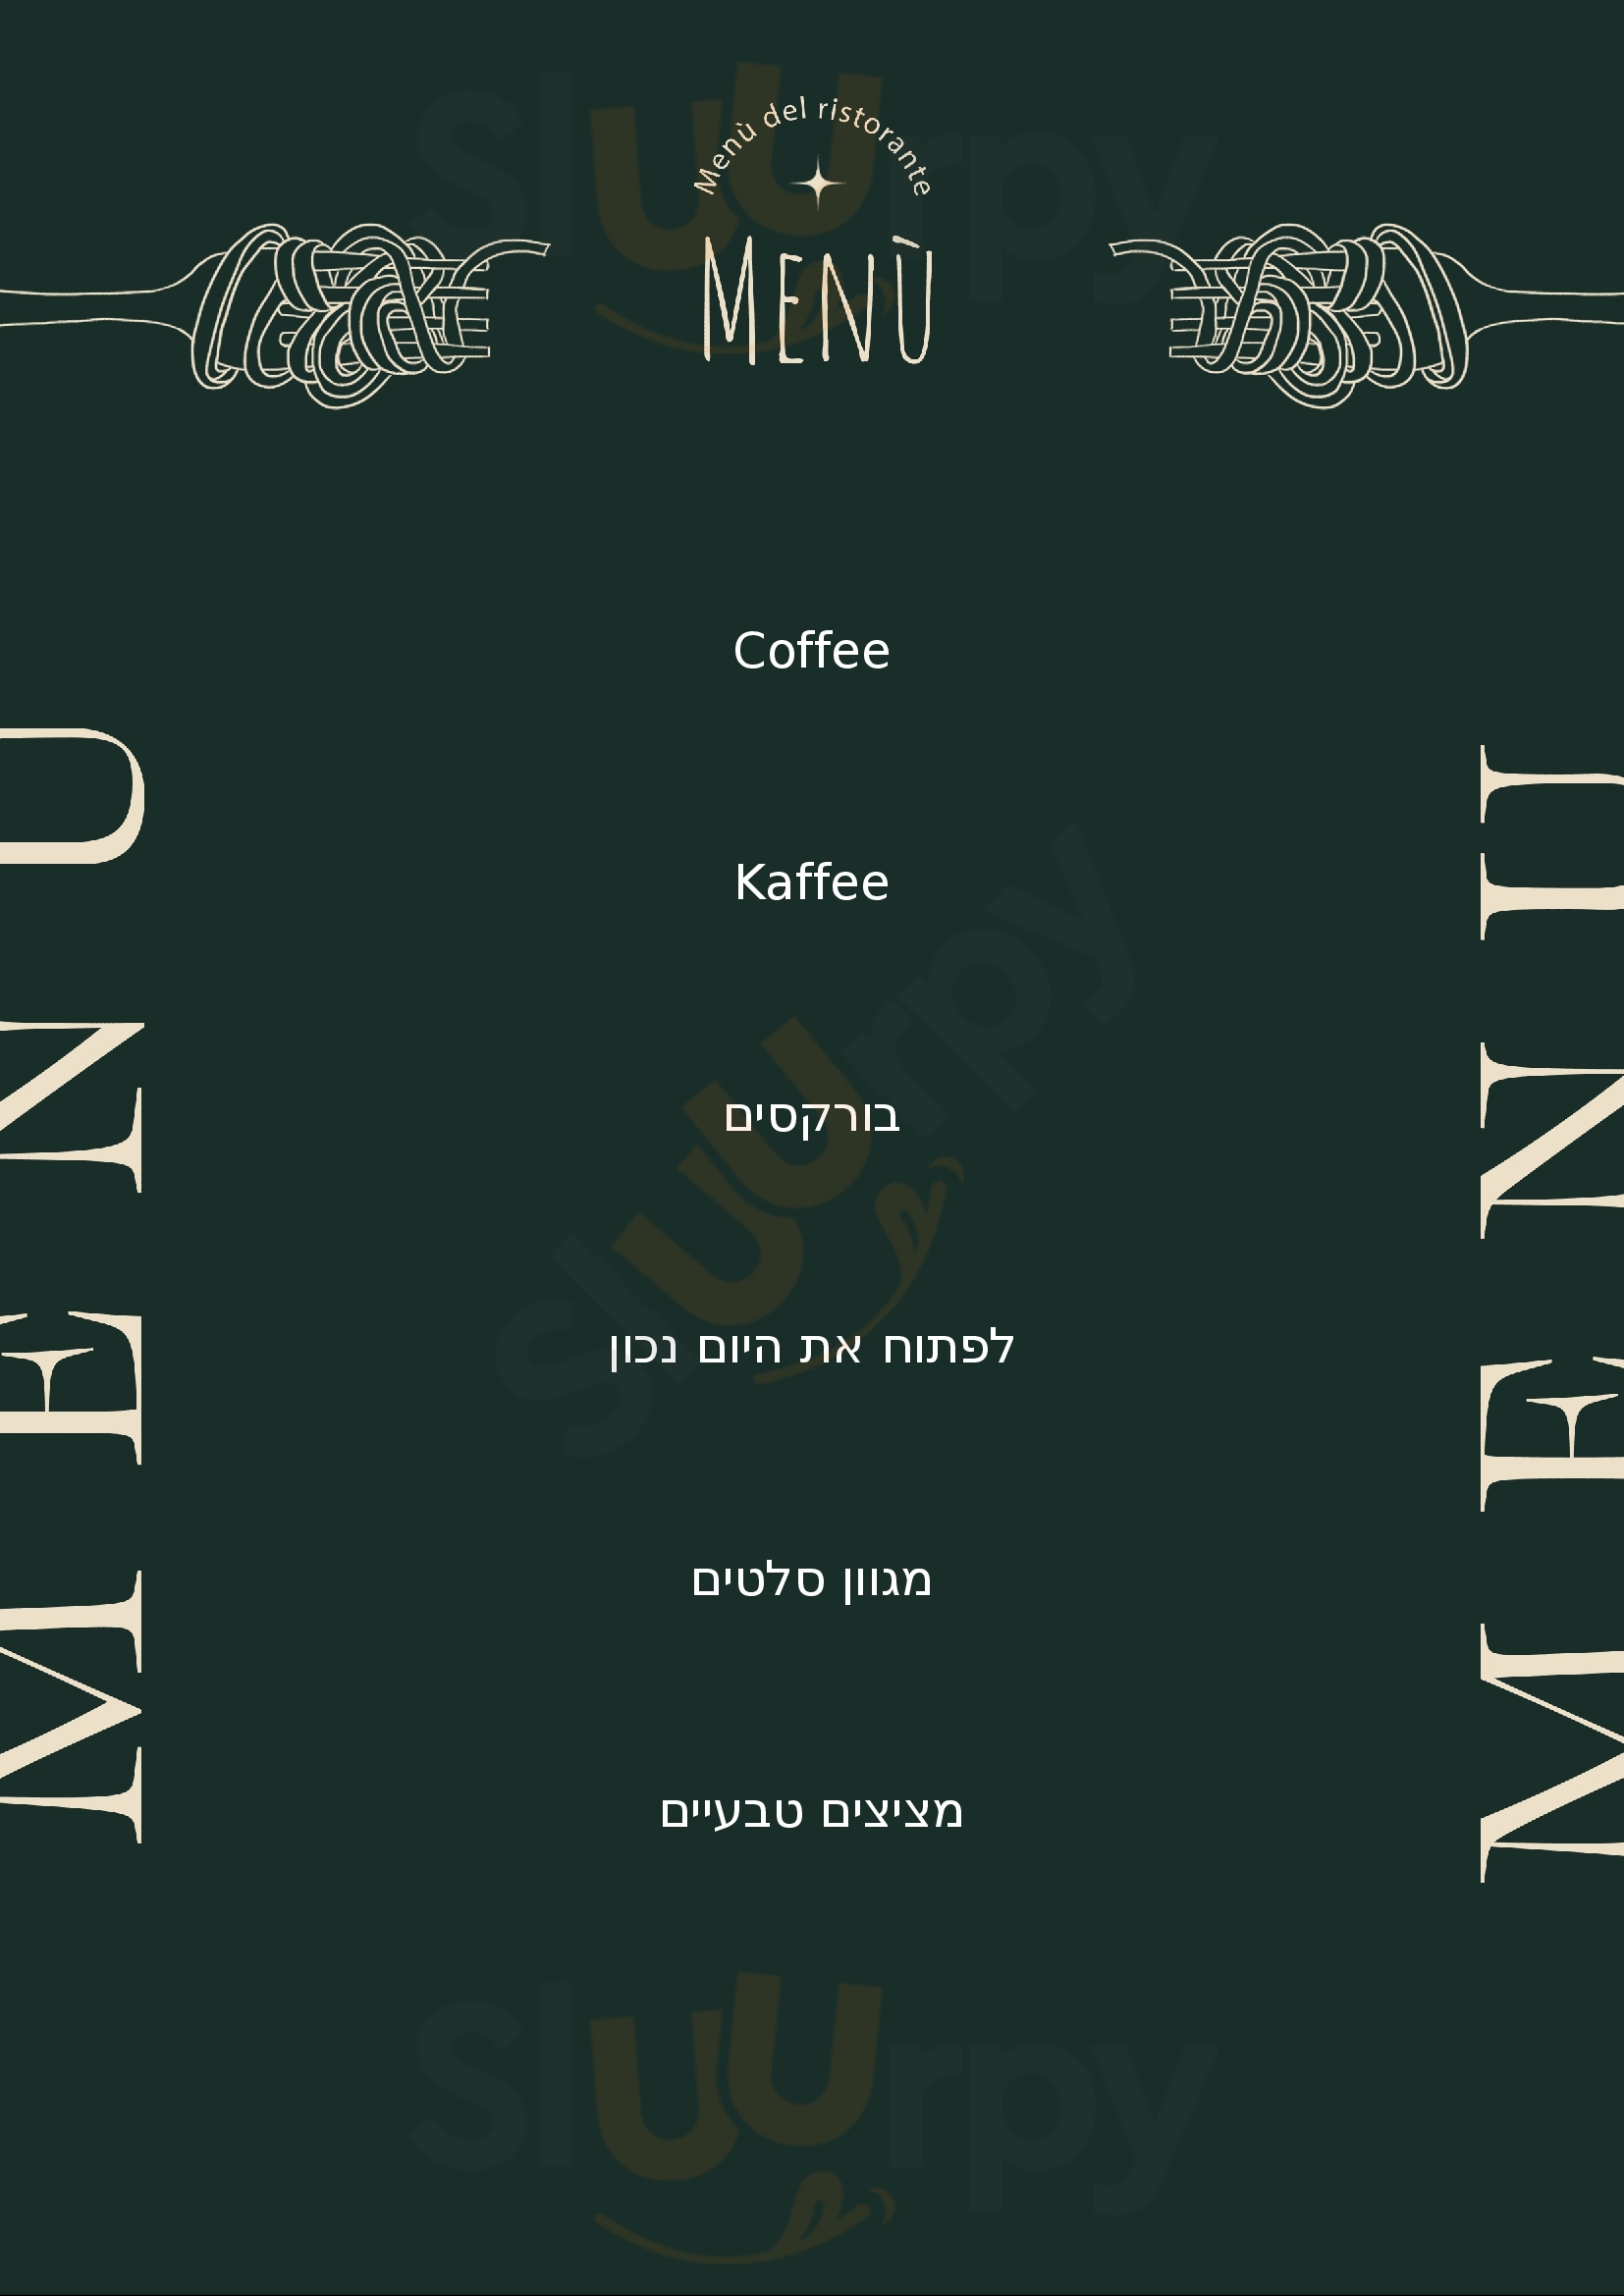 ‪brioche Coffee‬ אילת Menu - 1